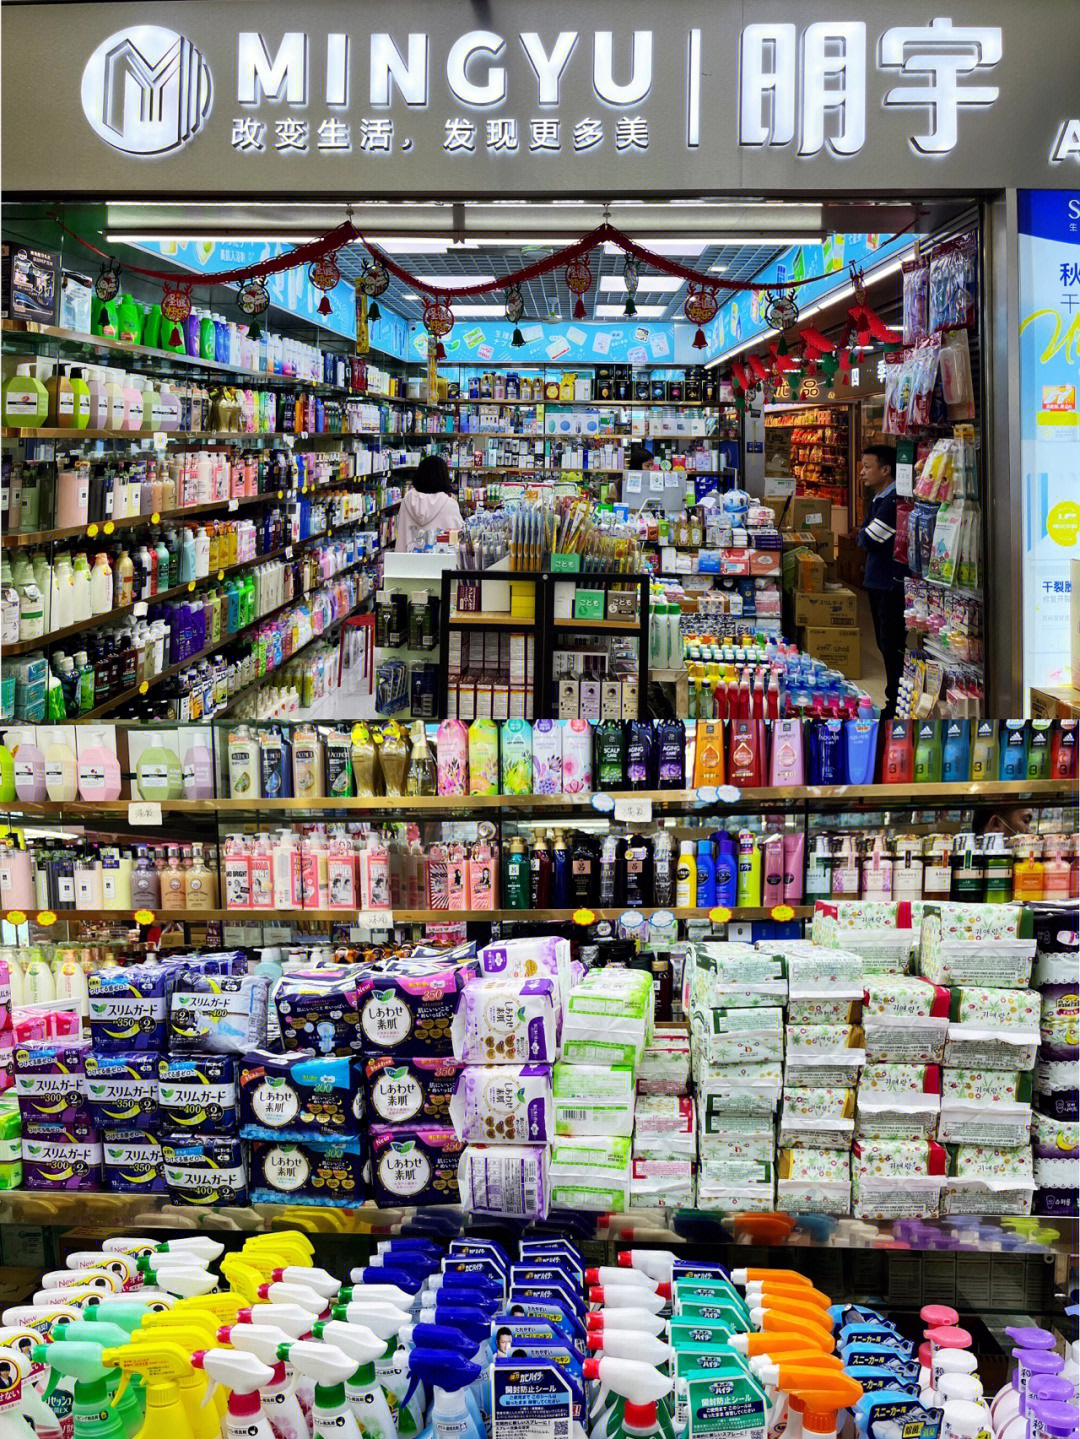 在华强北发现了一个宝藏零食批发价格~紫荆城食品交易中心,一件也是